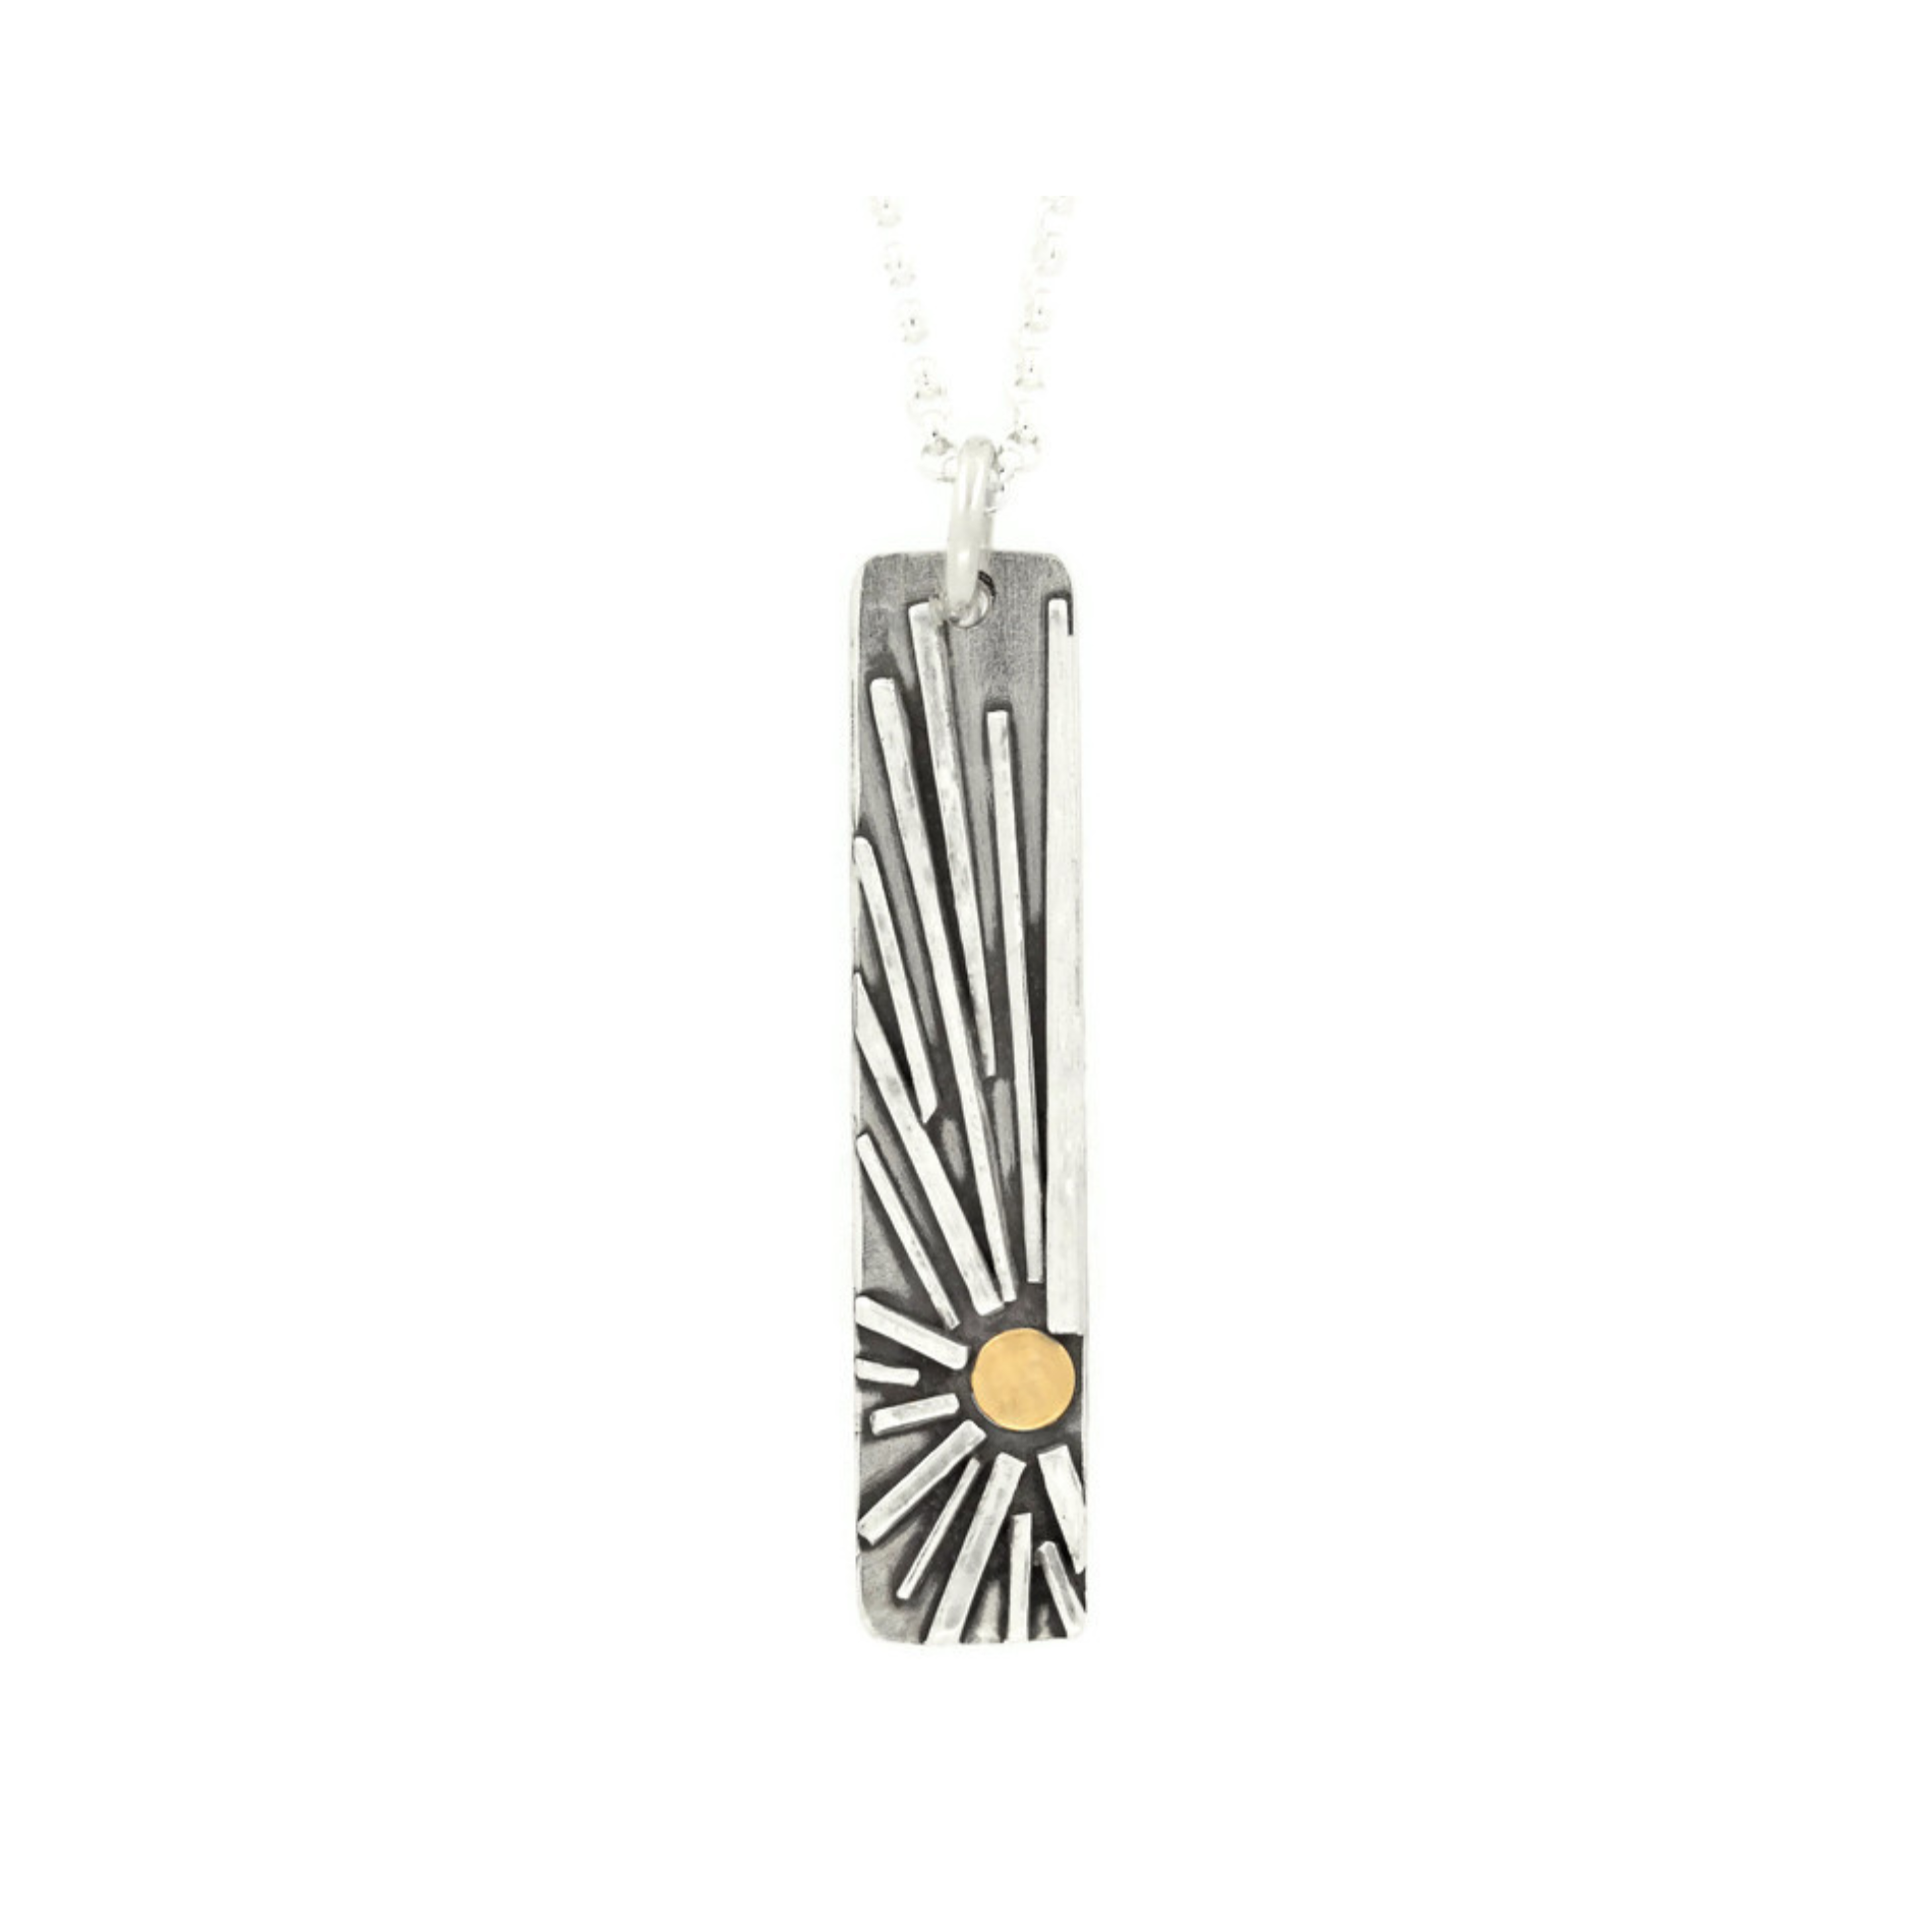 Shine vertical bar necklace by Jen Lesea Designs